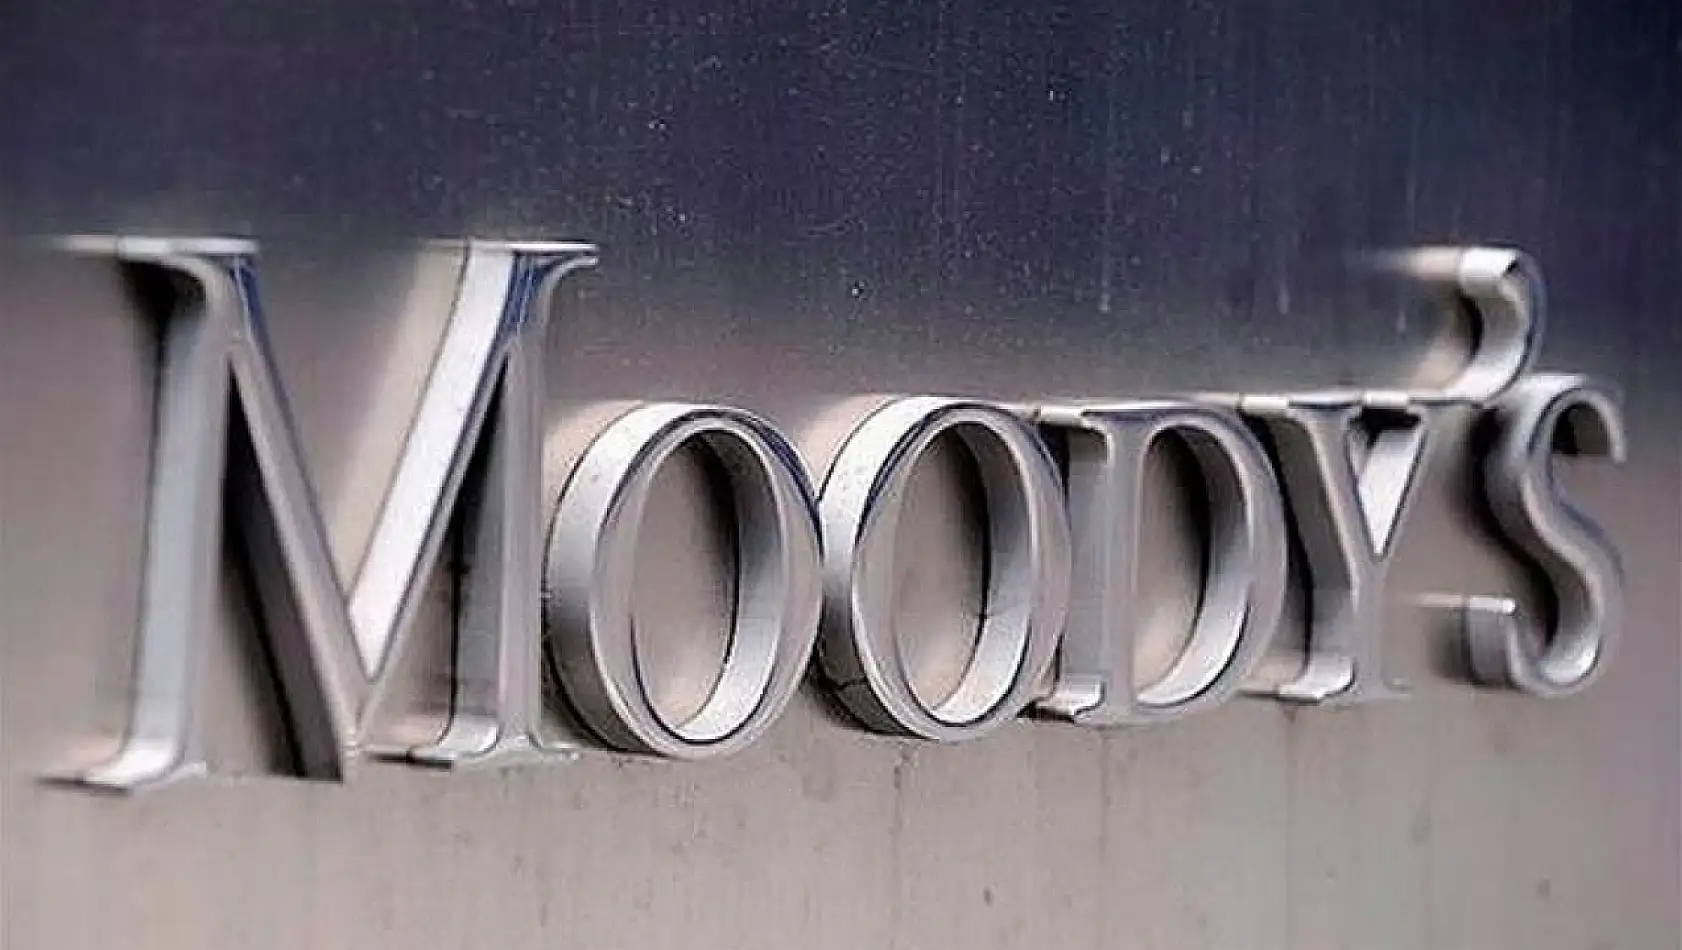 İş Dünyası Moody's Açıklaması İçin Gün Sayıyor